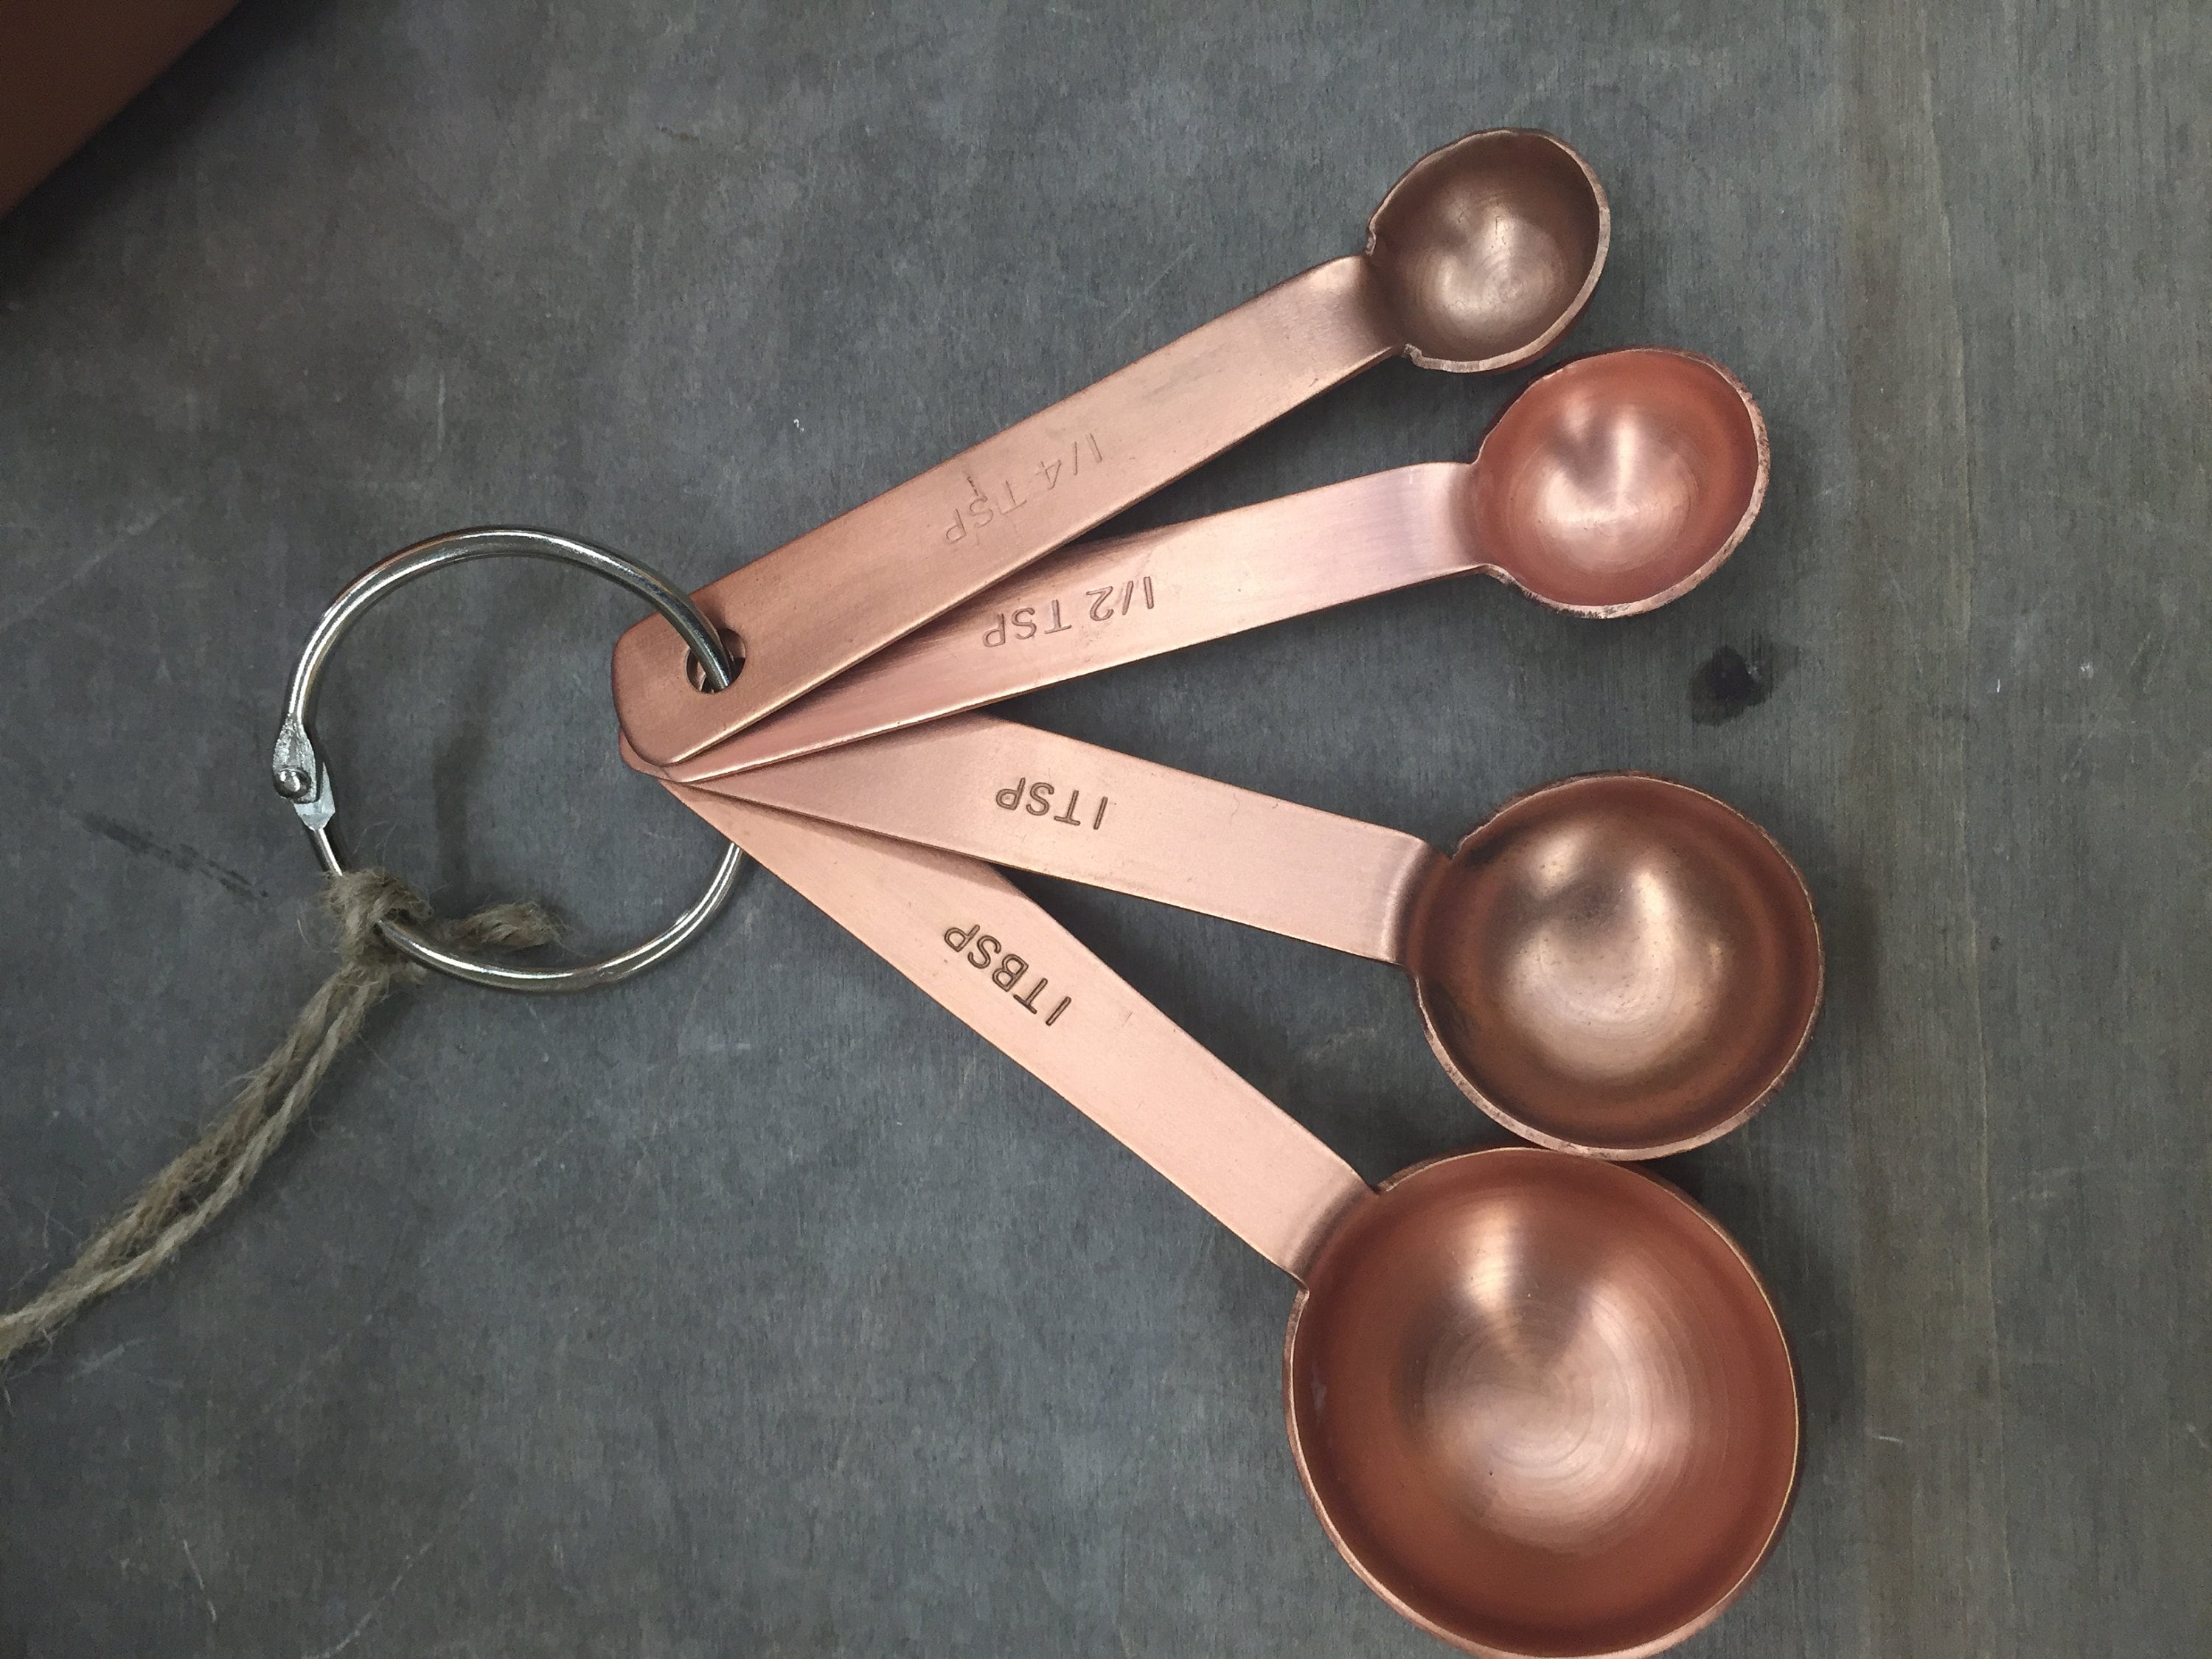 Measuring Spoons - Round Copper Set of 6 (Retail) – VanillaPura